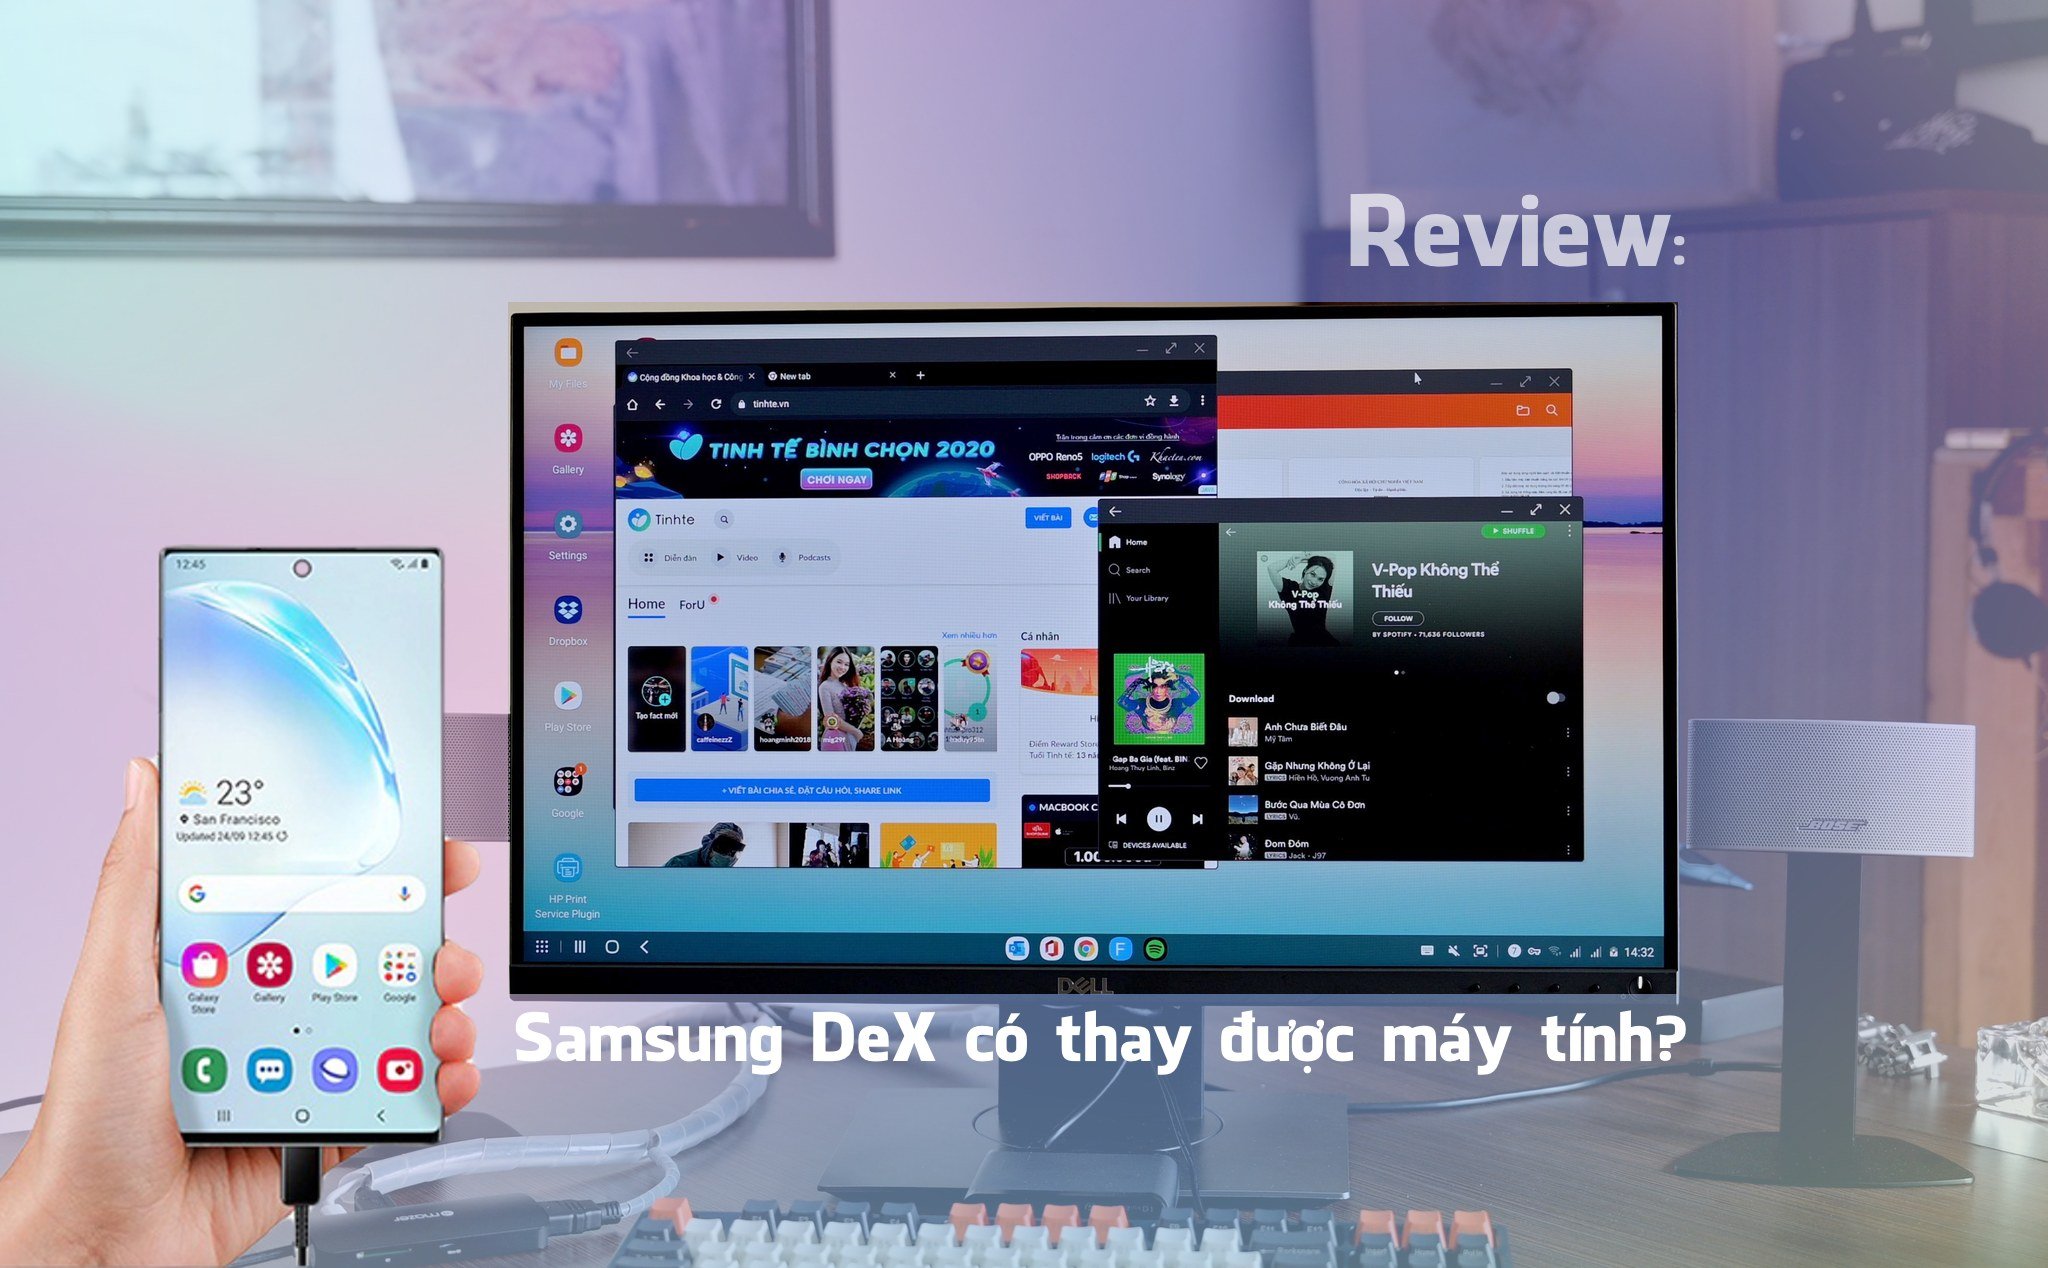 Review Samsung DeX: Có thể thay thế máy tính trong một số trường hợp, còn lại thì vẫn cần nâng cấp